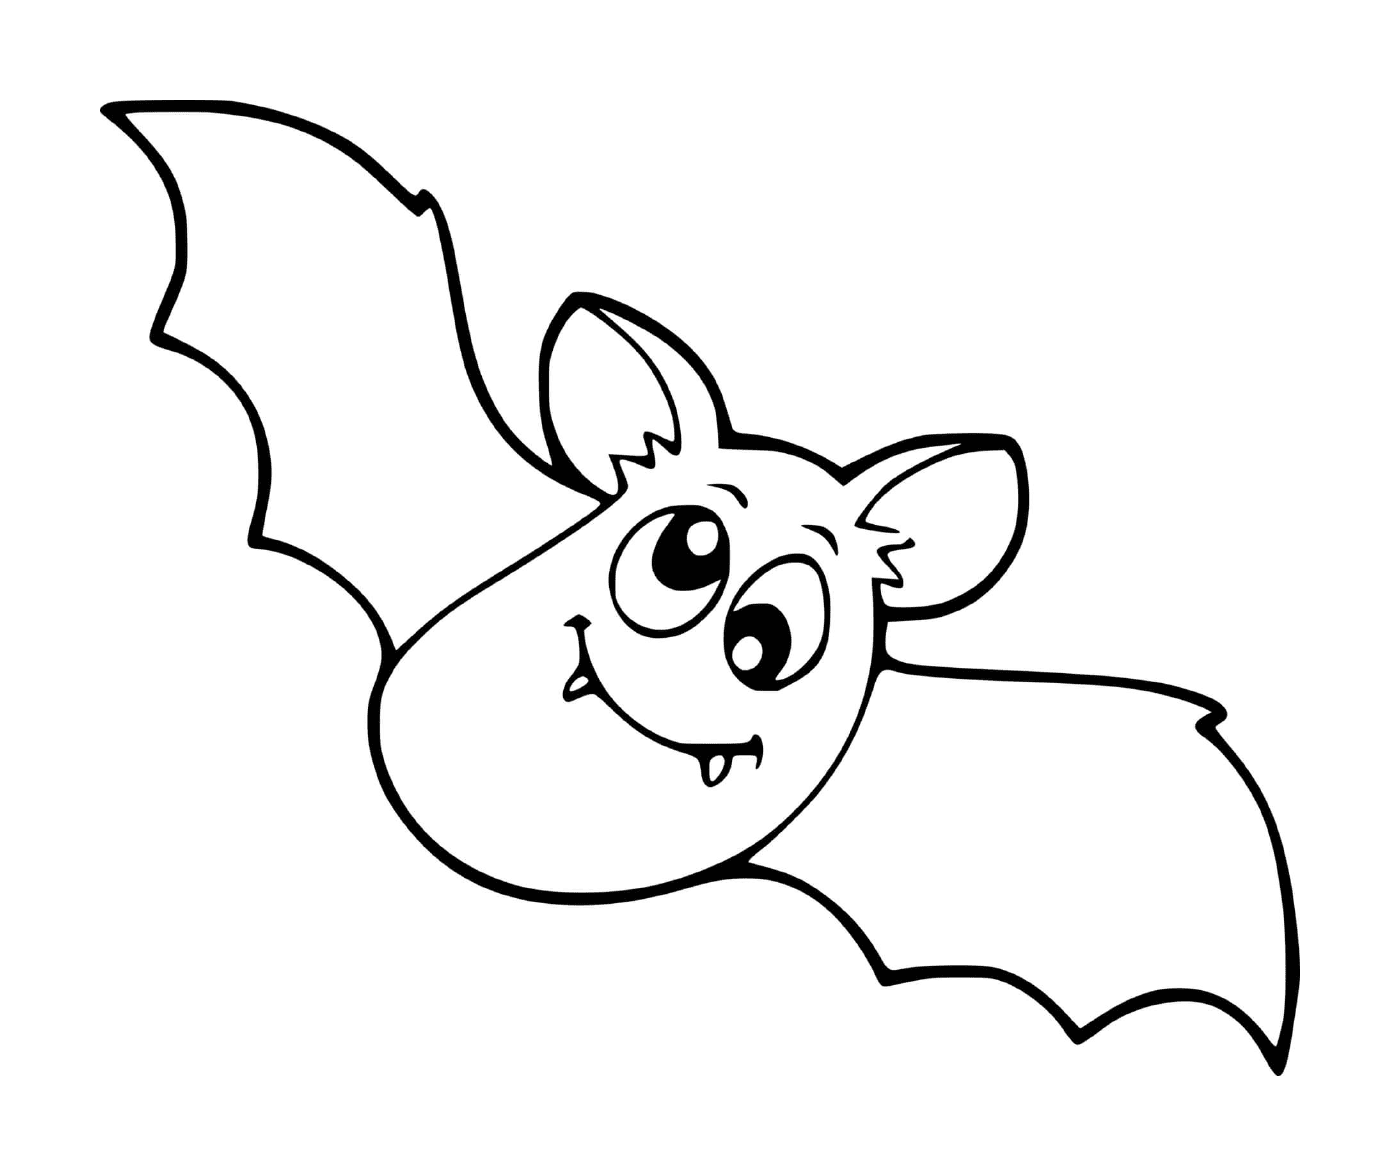  baby bat lost in flight 